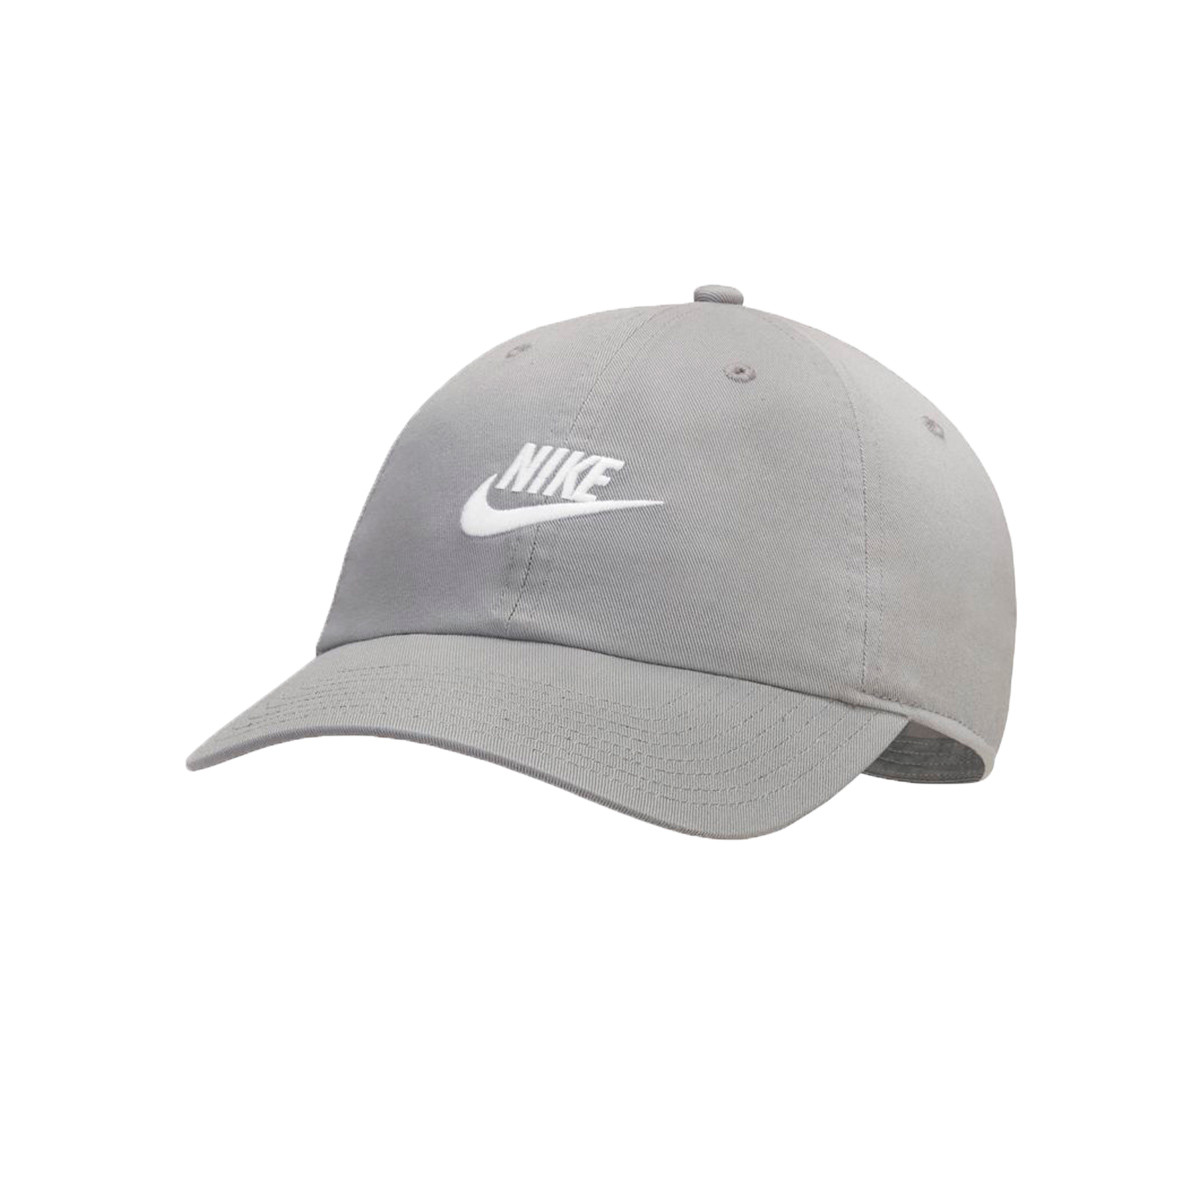 Gorra Nike Futura Cap Grey-White - Emotion